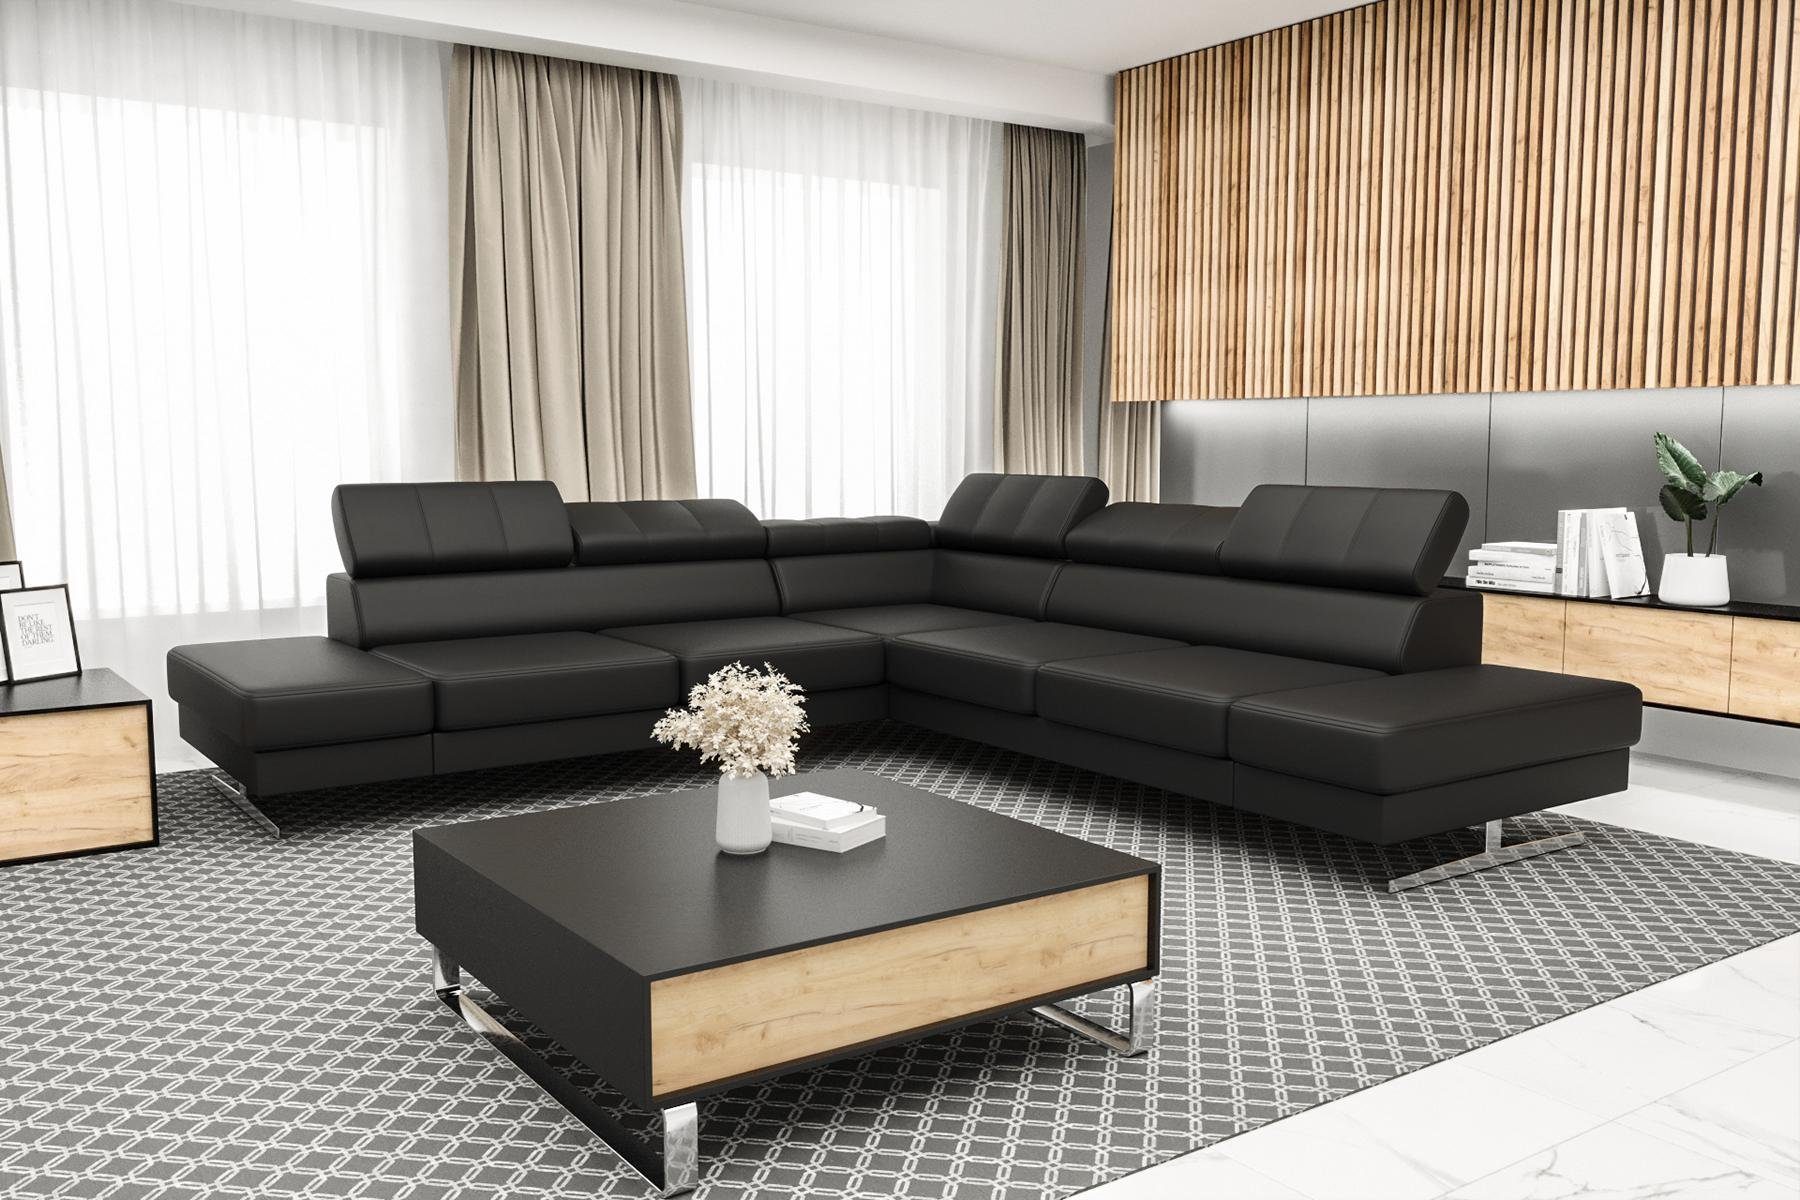 JVmoebel Ecksofa Designer Made L-Form Sofa Luxus Europe Textil, Wohnzimmer Schwarzes Couch in